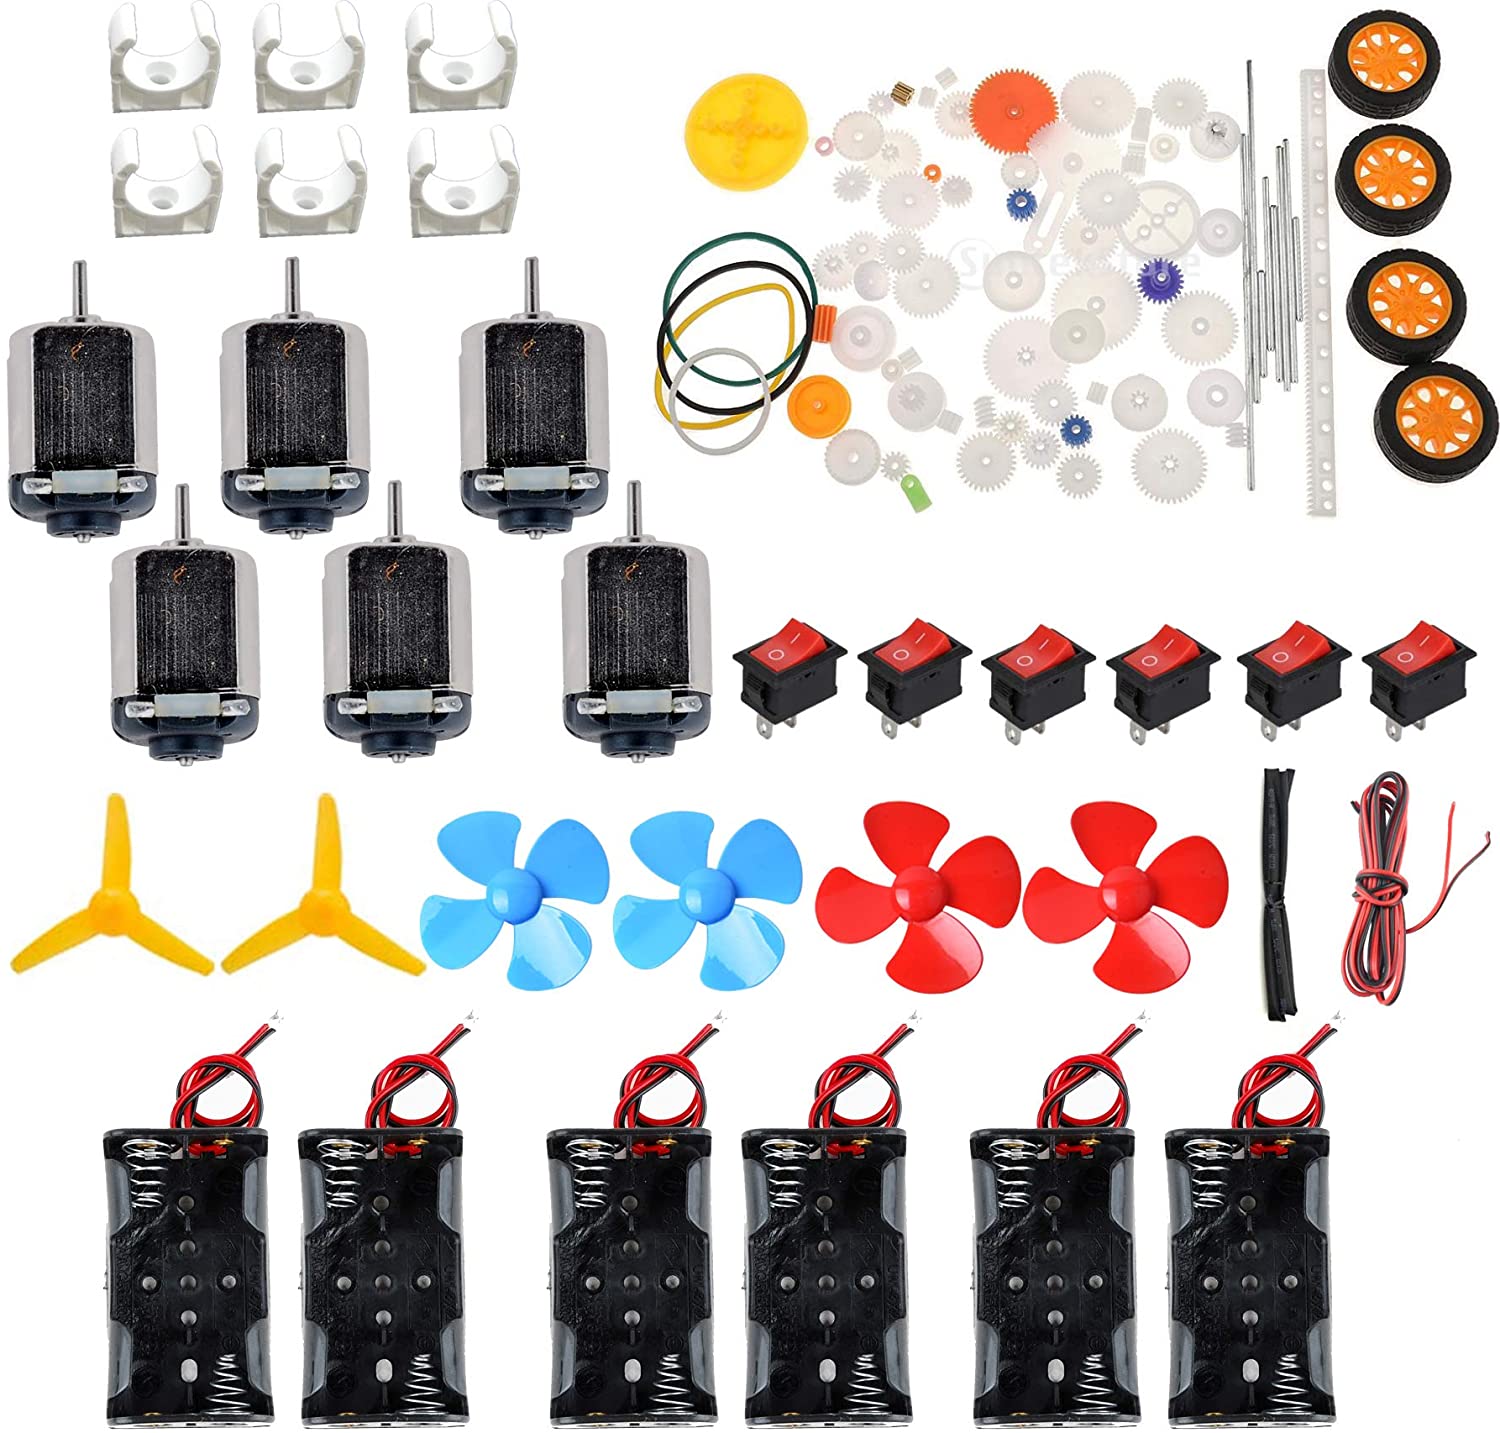 6- sæt jævnstrømsmotorsæt hjemmelavet diy-projektsæt: dc-motorer, gear, propeller, aa-batterikasse, kabler, switch til diy science-projekter